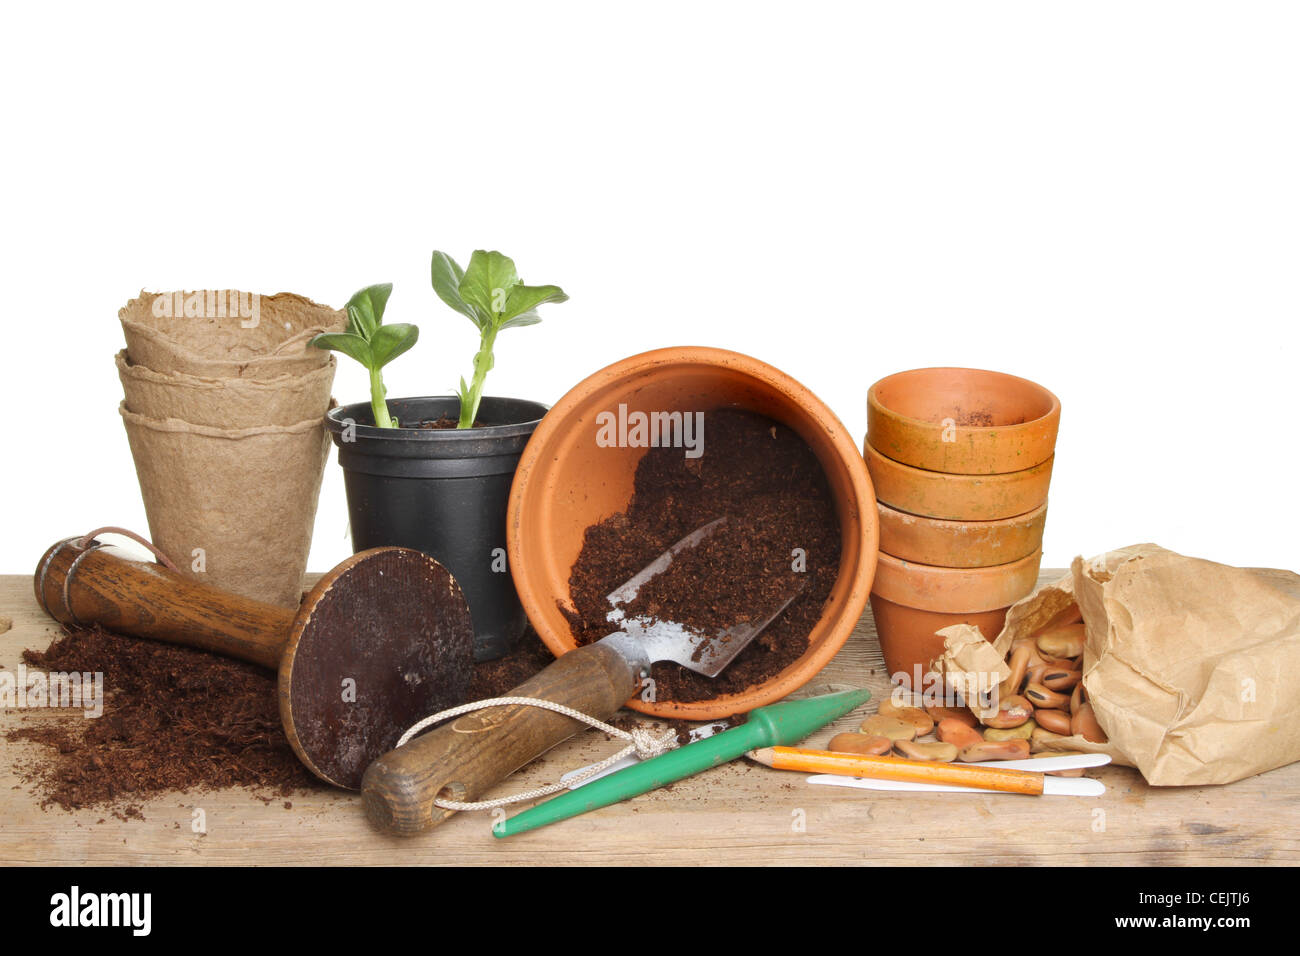 Gartengeräte, Terrakotta Blumentöpfe, Erde, Samen und ein Keimling-Pflanze auf einer Holzbank Blumenerde Stockfoto